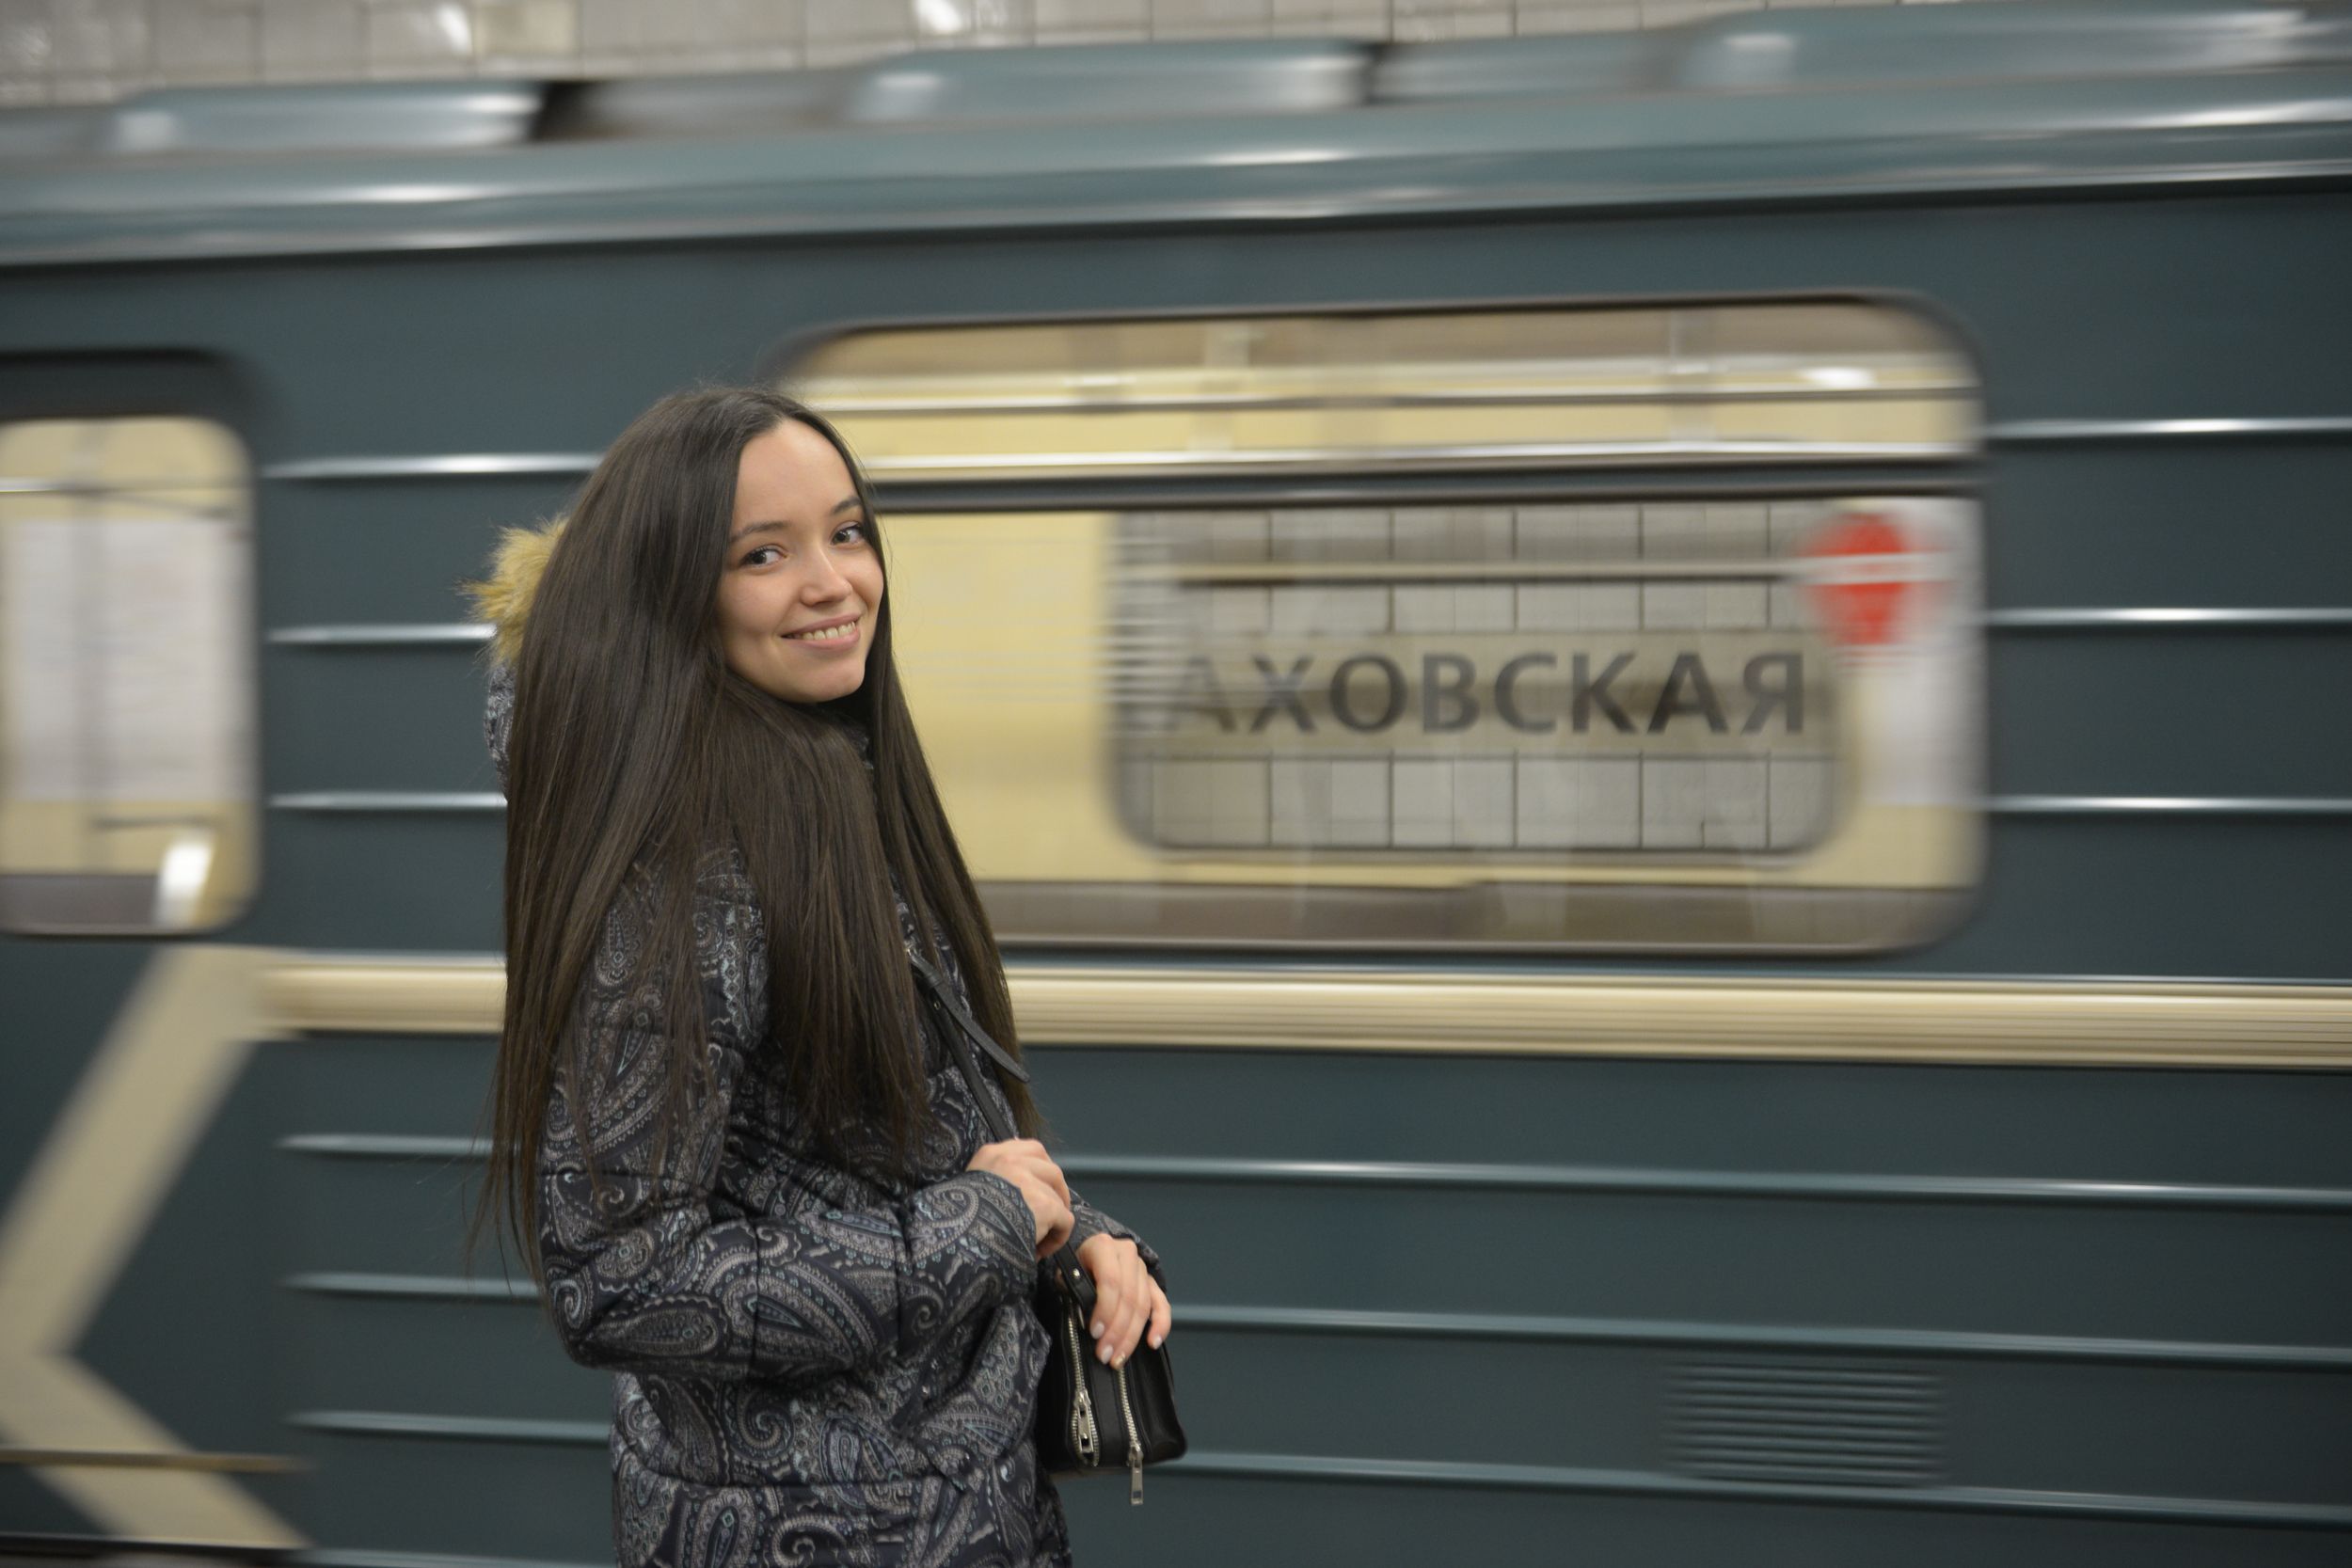 Работы по интеграции Каховской линии в БКЛ метро начнутся до конца 2019 года. Фото: Наталья Феоктистова